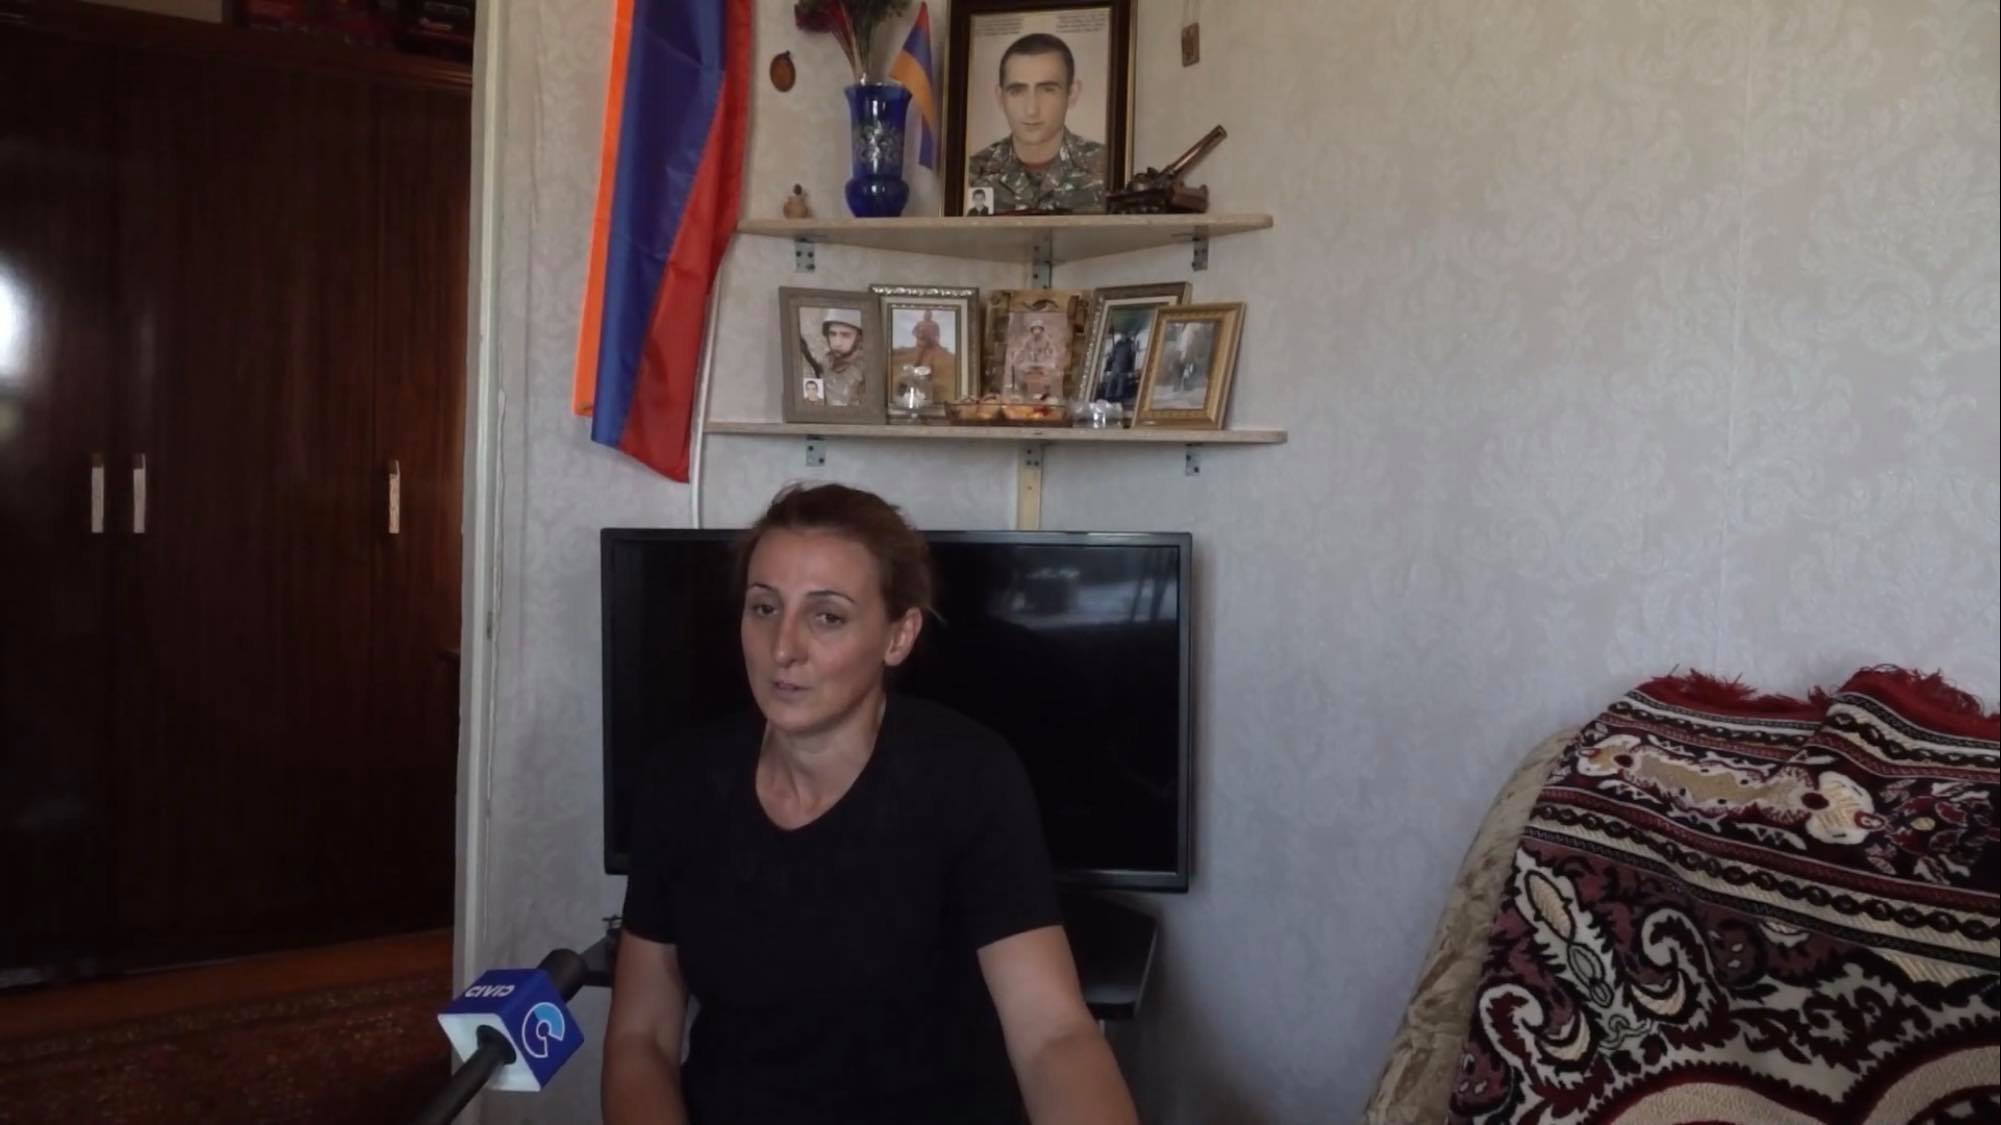 44-օրյա պատերազմի մասնակից Սարգիս Գրիգորյանի մայրը վիրավորական է համարում օրեր առաջ որդու մահն ինքնասպանություն որակելը․ տեսանյութ